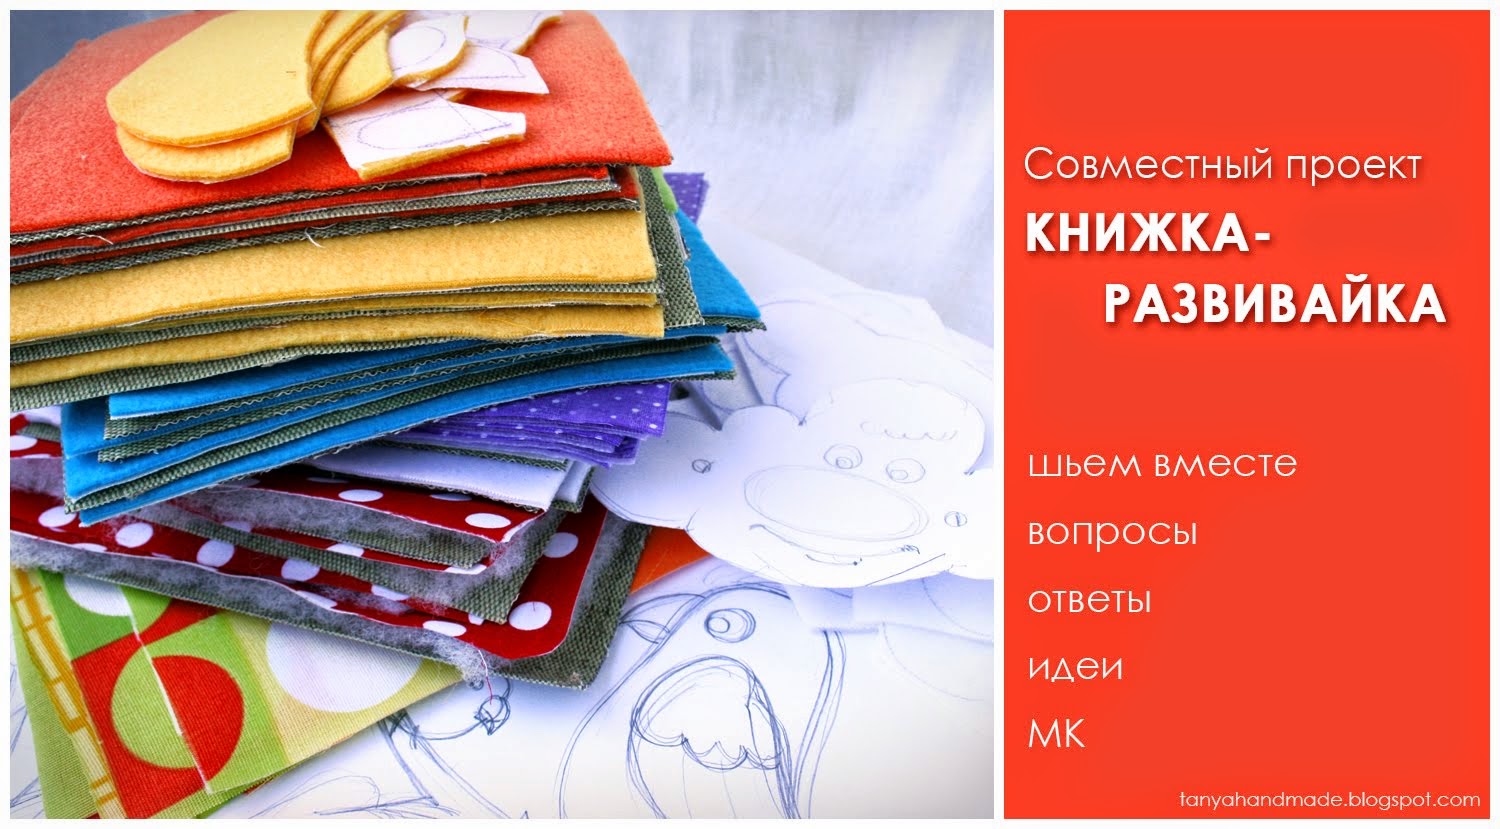 Master Class of ЕTatyana Petrenko (ART OF SEAMS) sewing development book